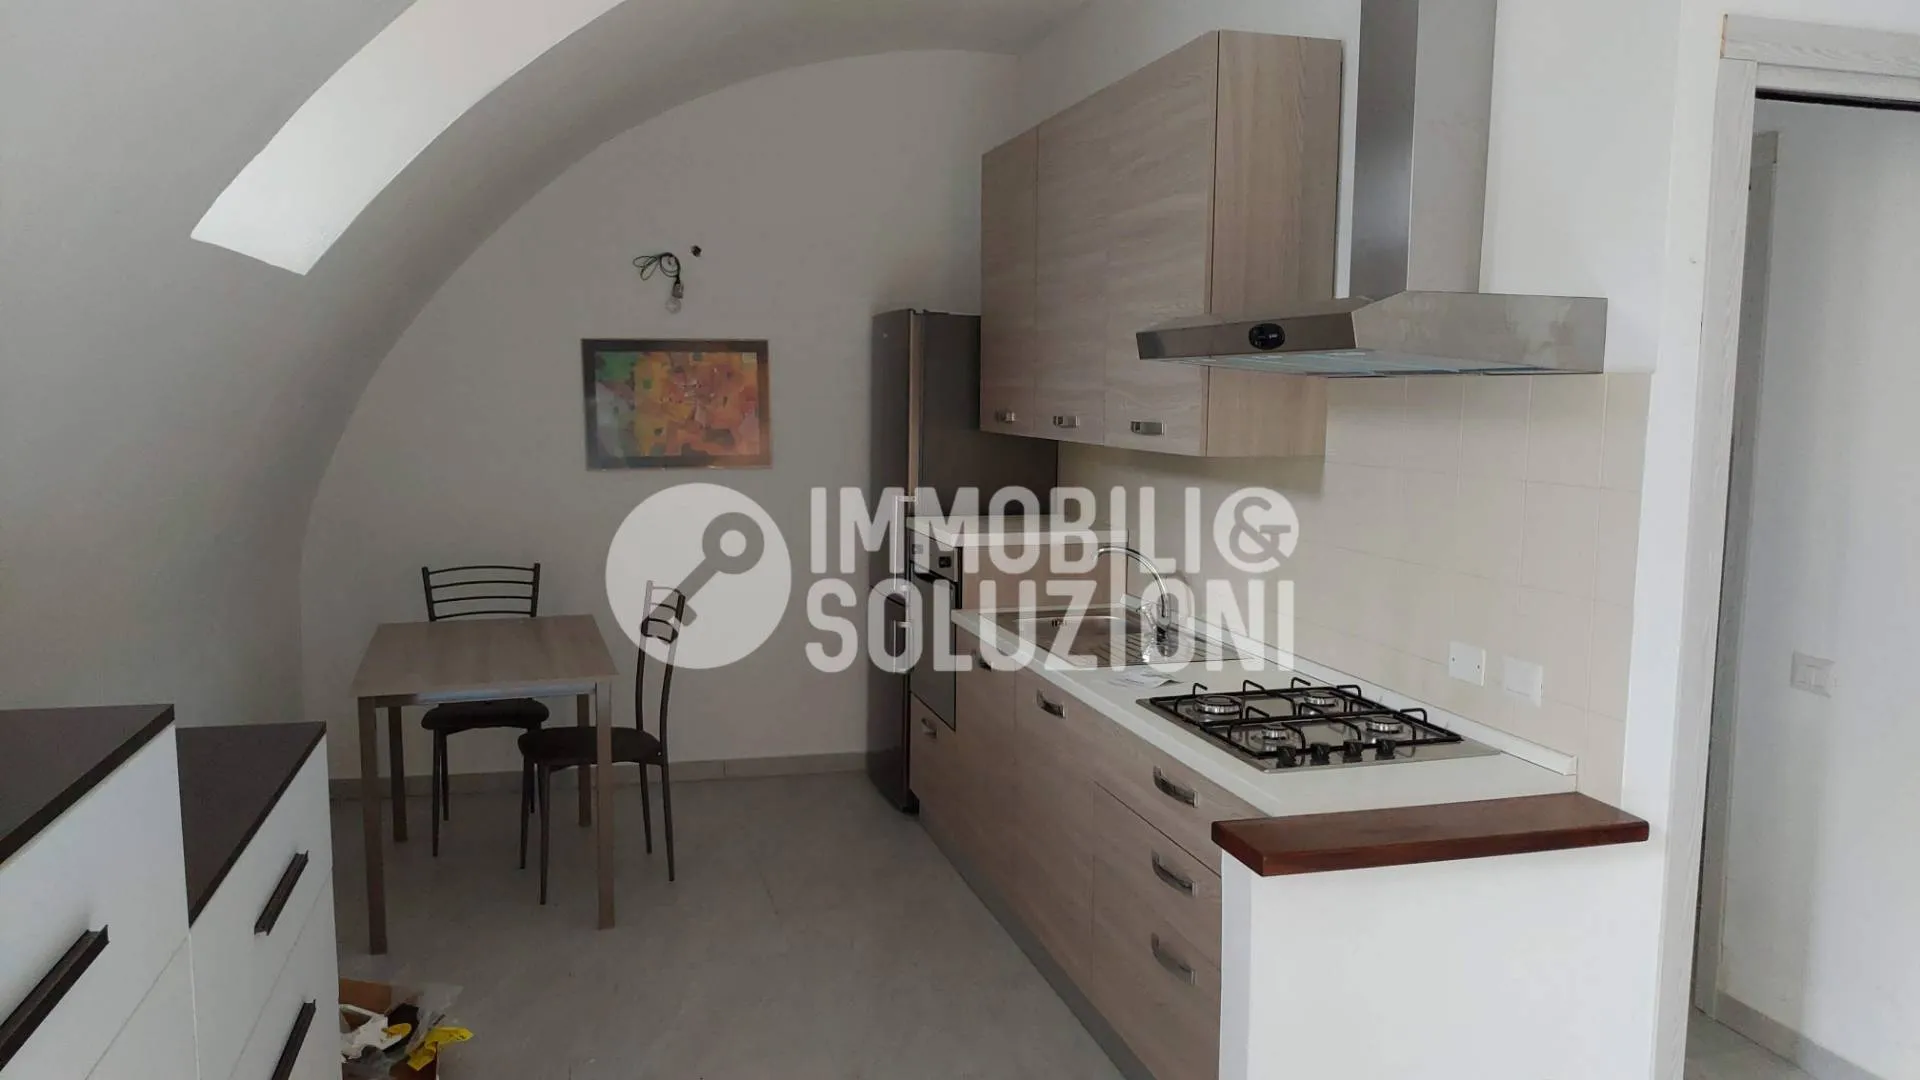 Immagine per Appartamento in vendita a Scanzorosciate via abadia